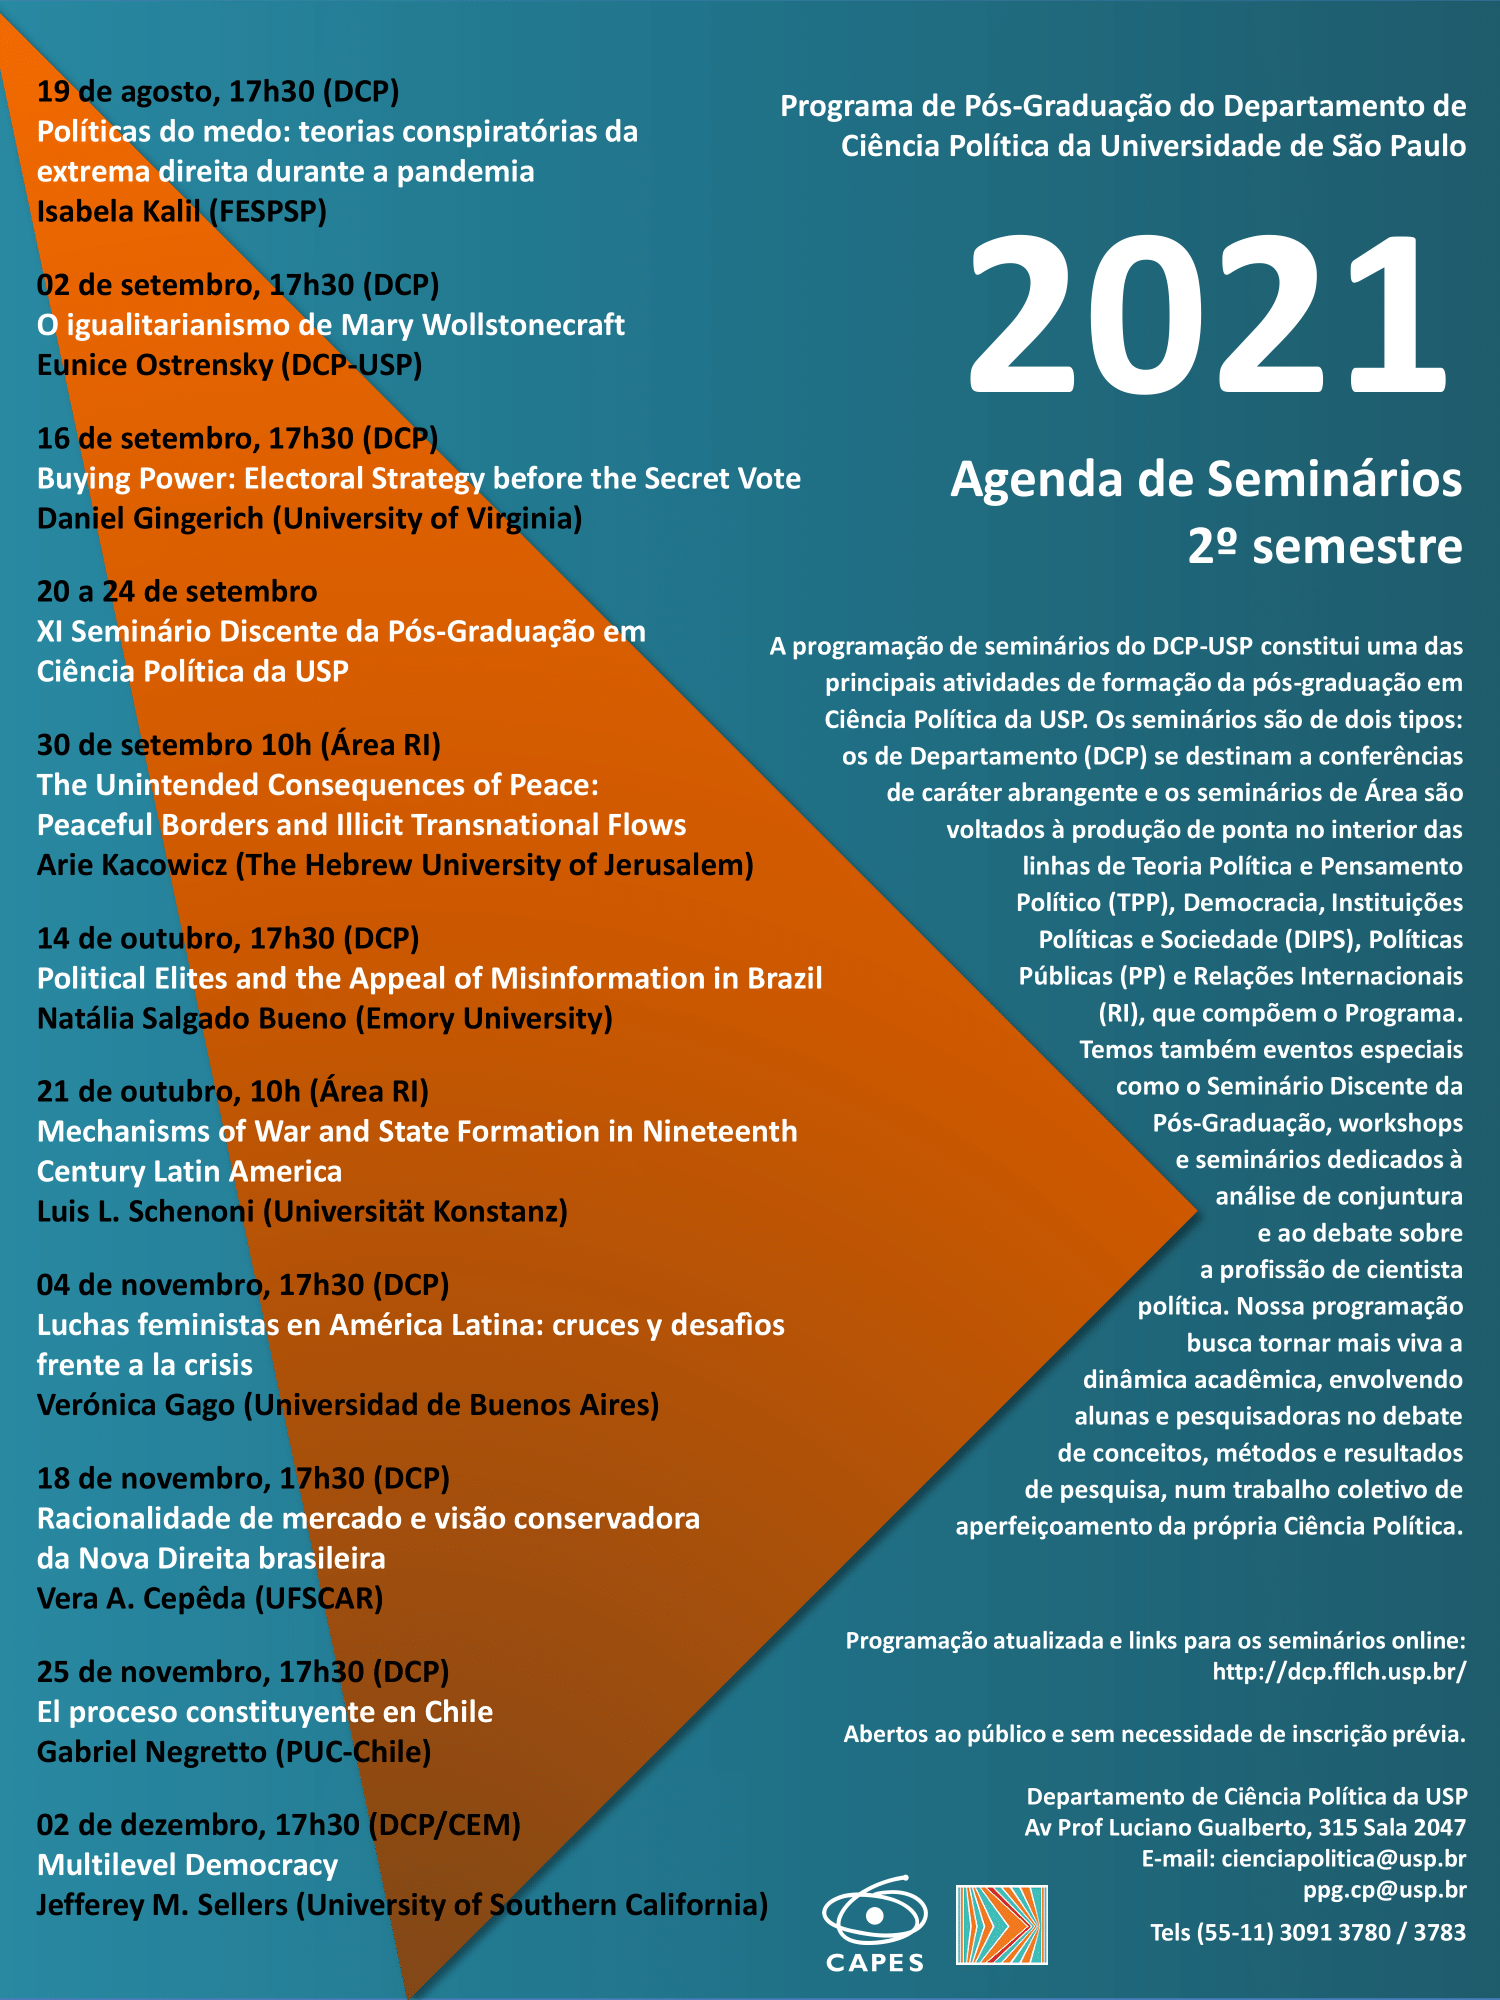 Programação de Seminários - 2º semestre de 2021